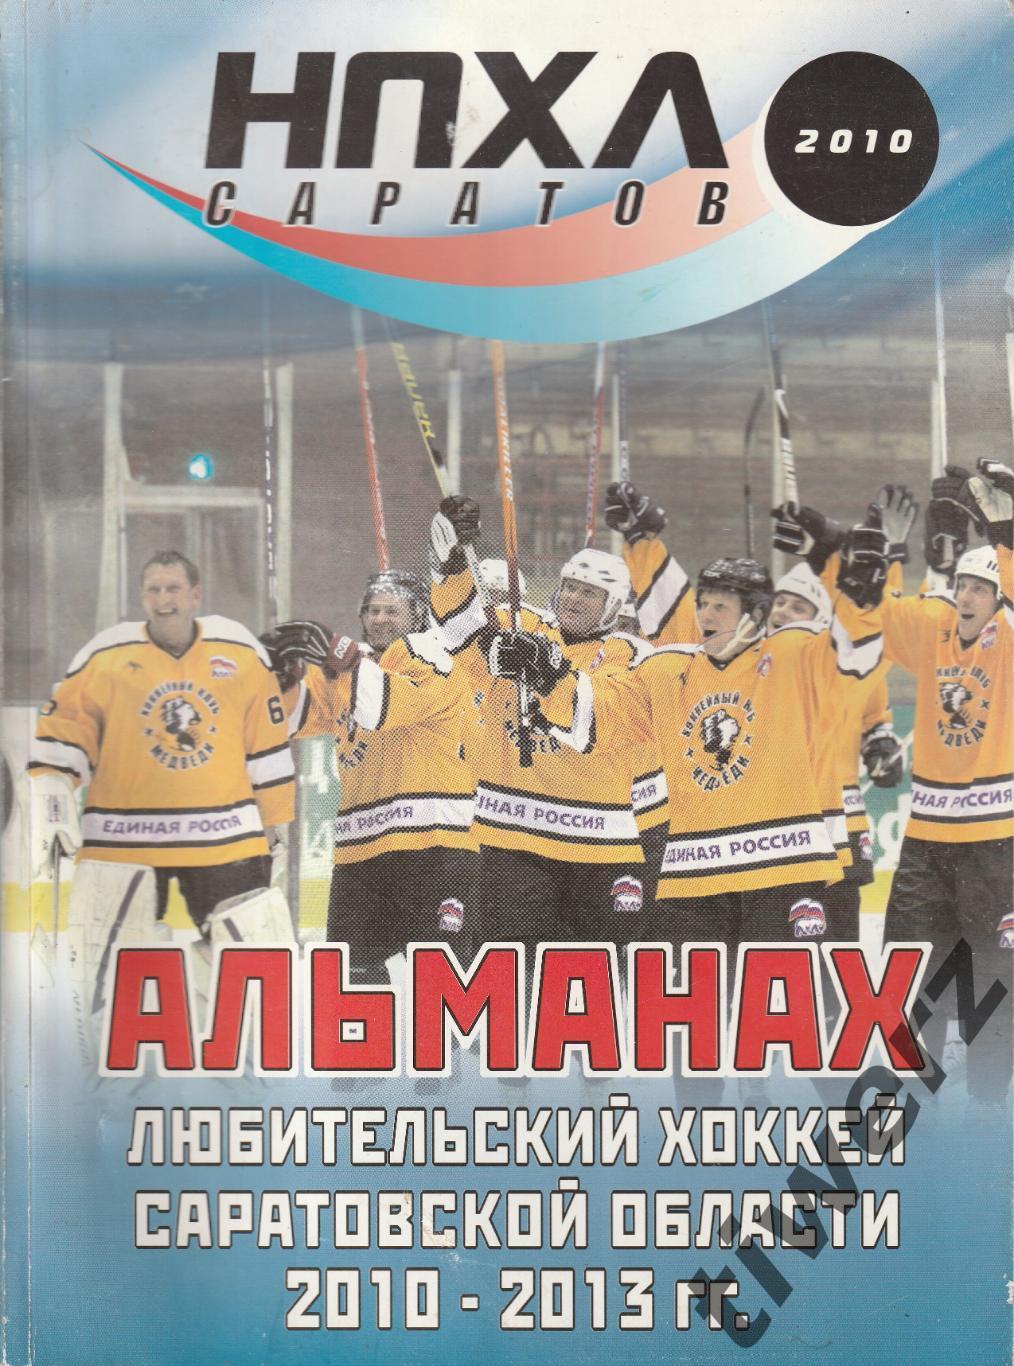 НПХЛ Саратов. Любительский хоккей Саратовской области 2010-2013